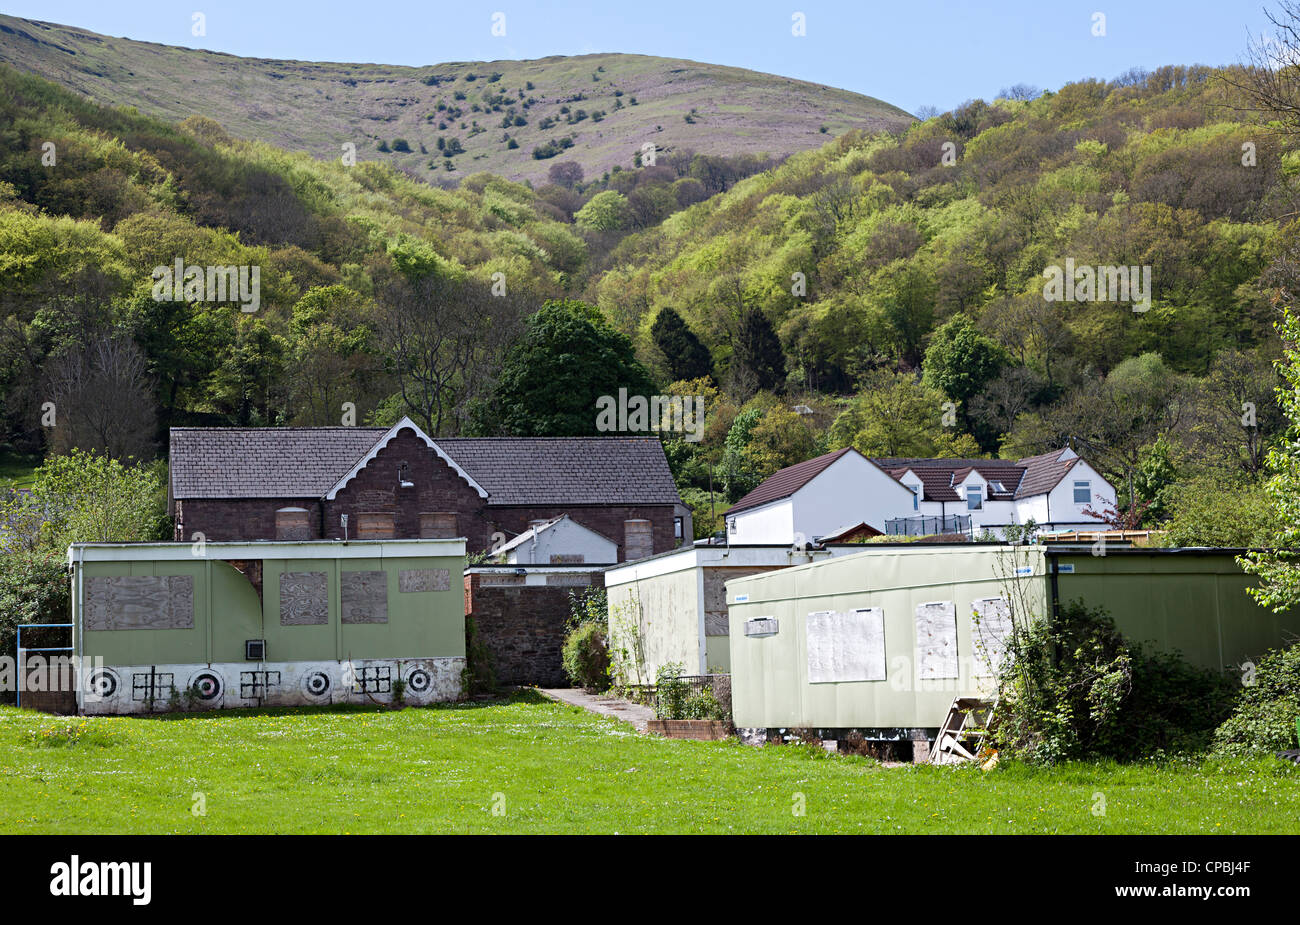 Fermé et condamné l'école primaire de village de Llanfoist avec l'Ardanaiseig colline derrière, Pays de Galles, Royaume-Uni Banque D'Images